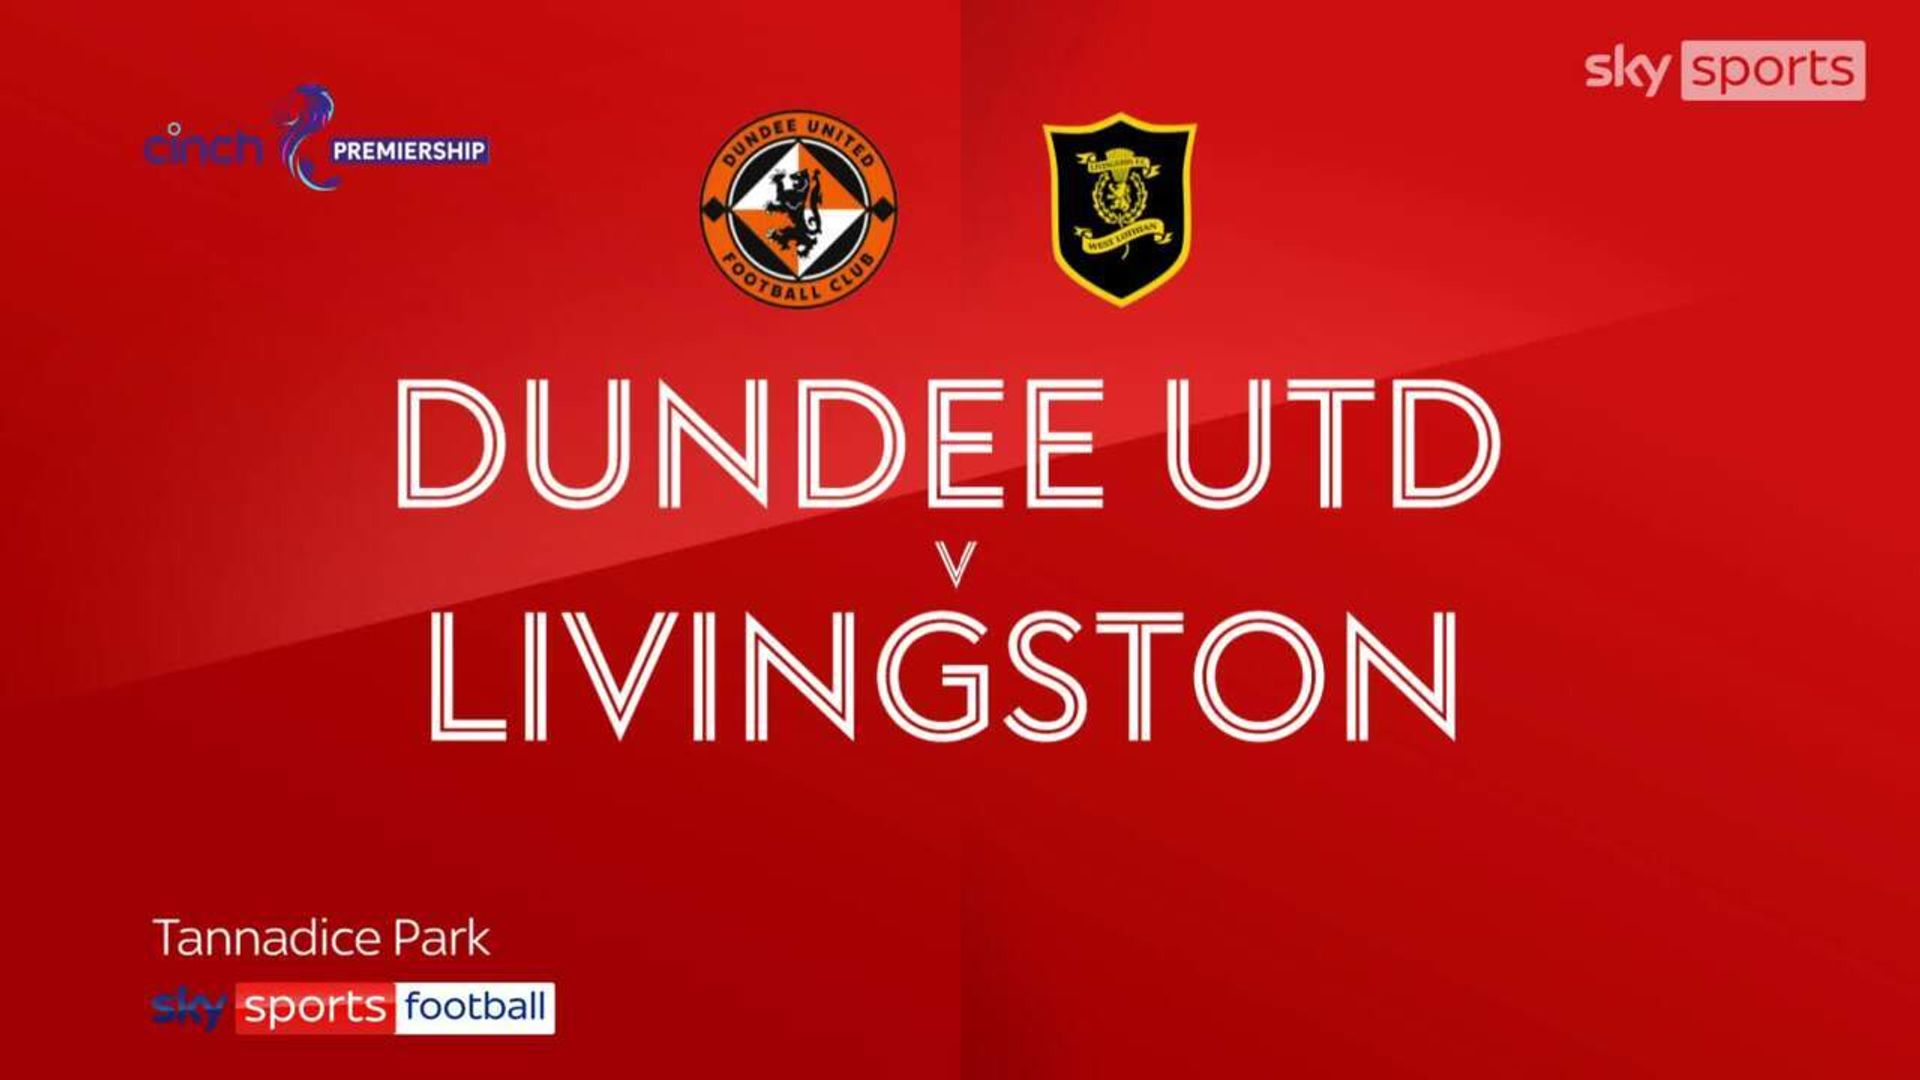 Dundee United 0-1 Livingston